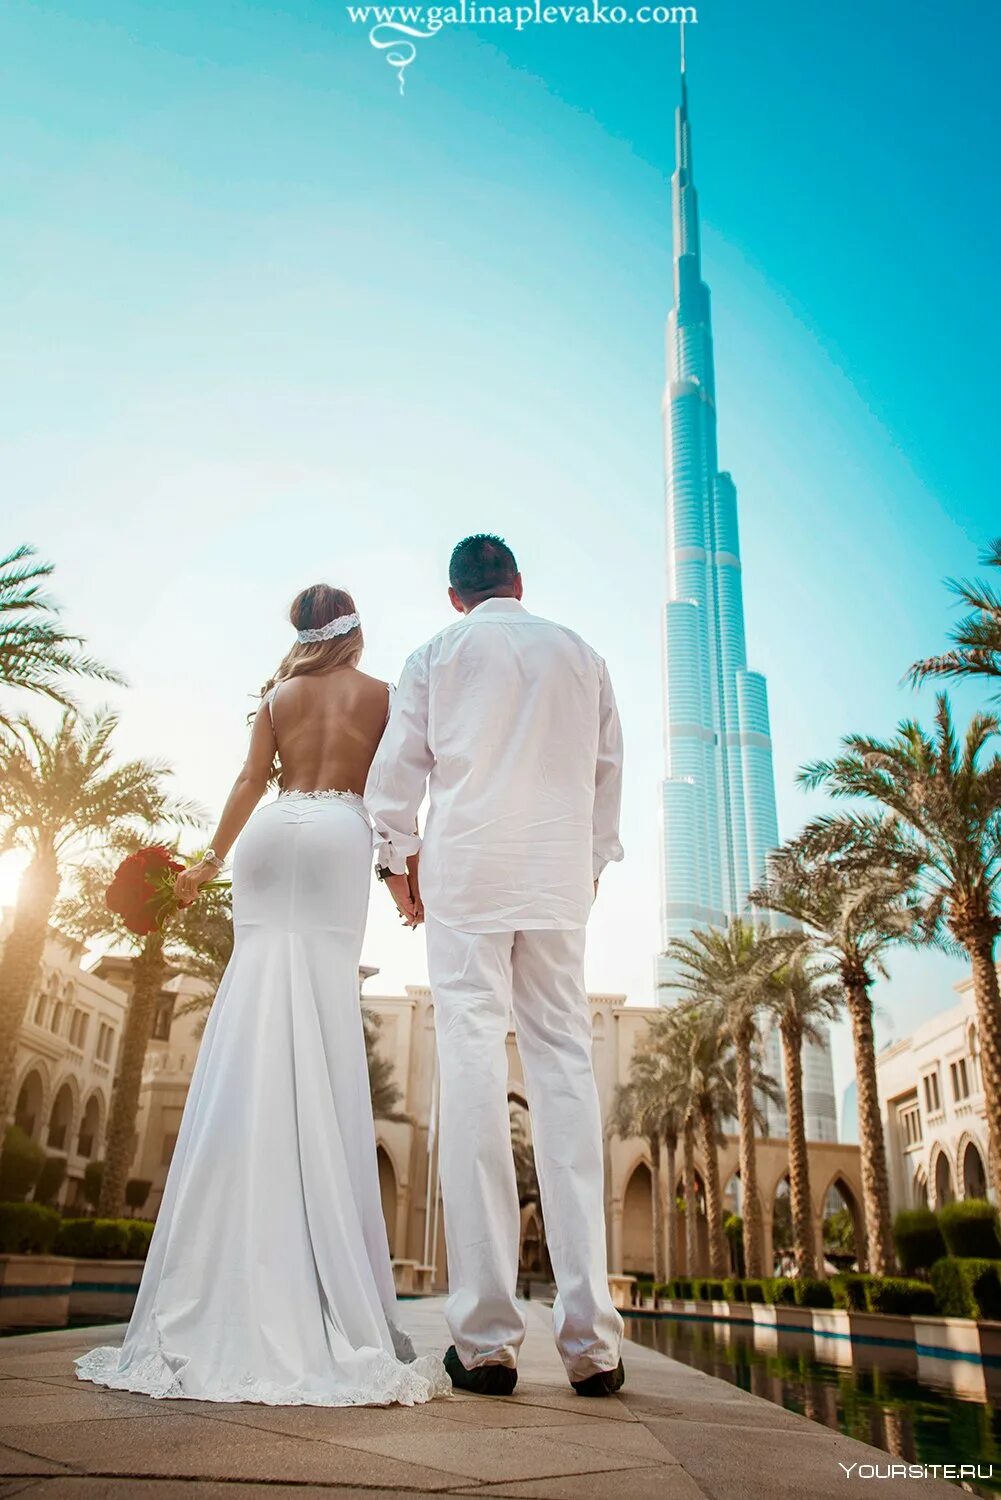 Свадьба в дубае. Фотограф Дубай. Свадебная фотосессия в Дубае. Свадьба в Эмиратах. Свадебная фотосессия в бдубаи.